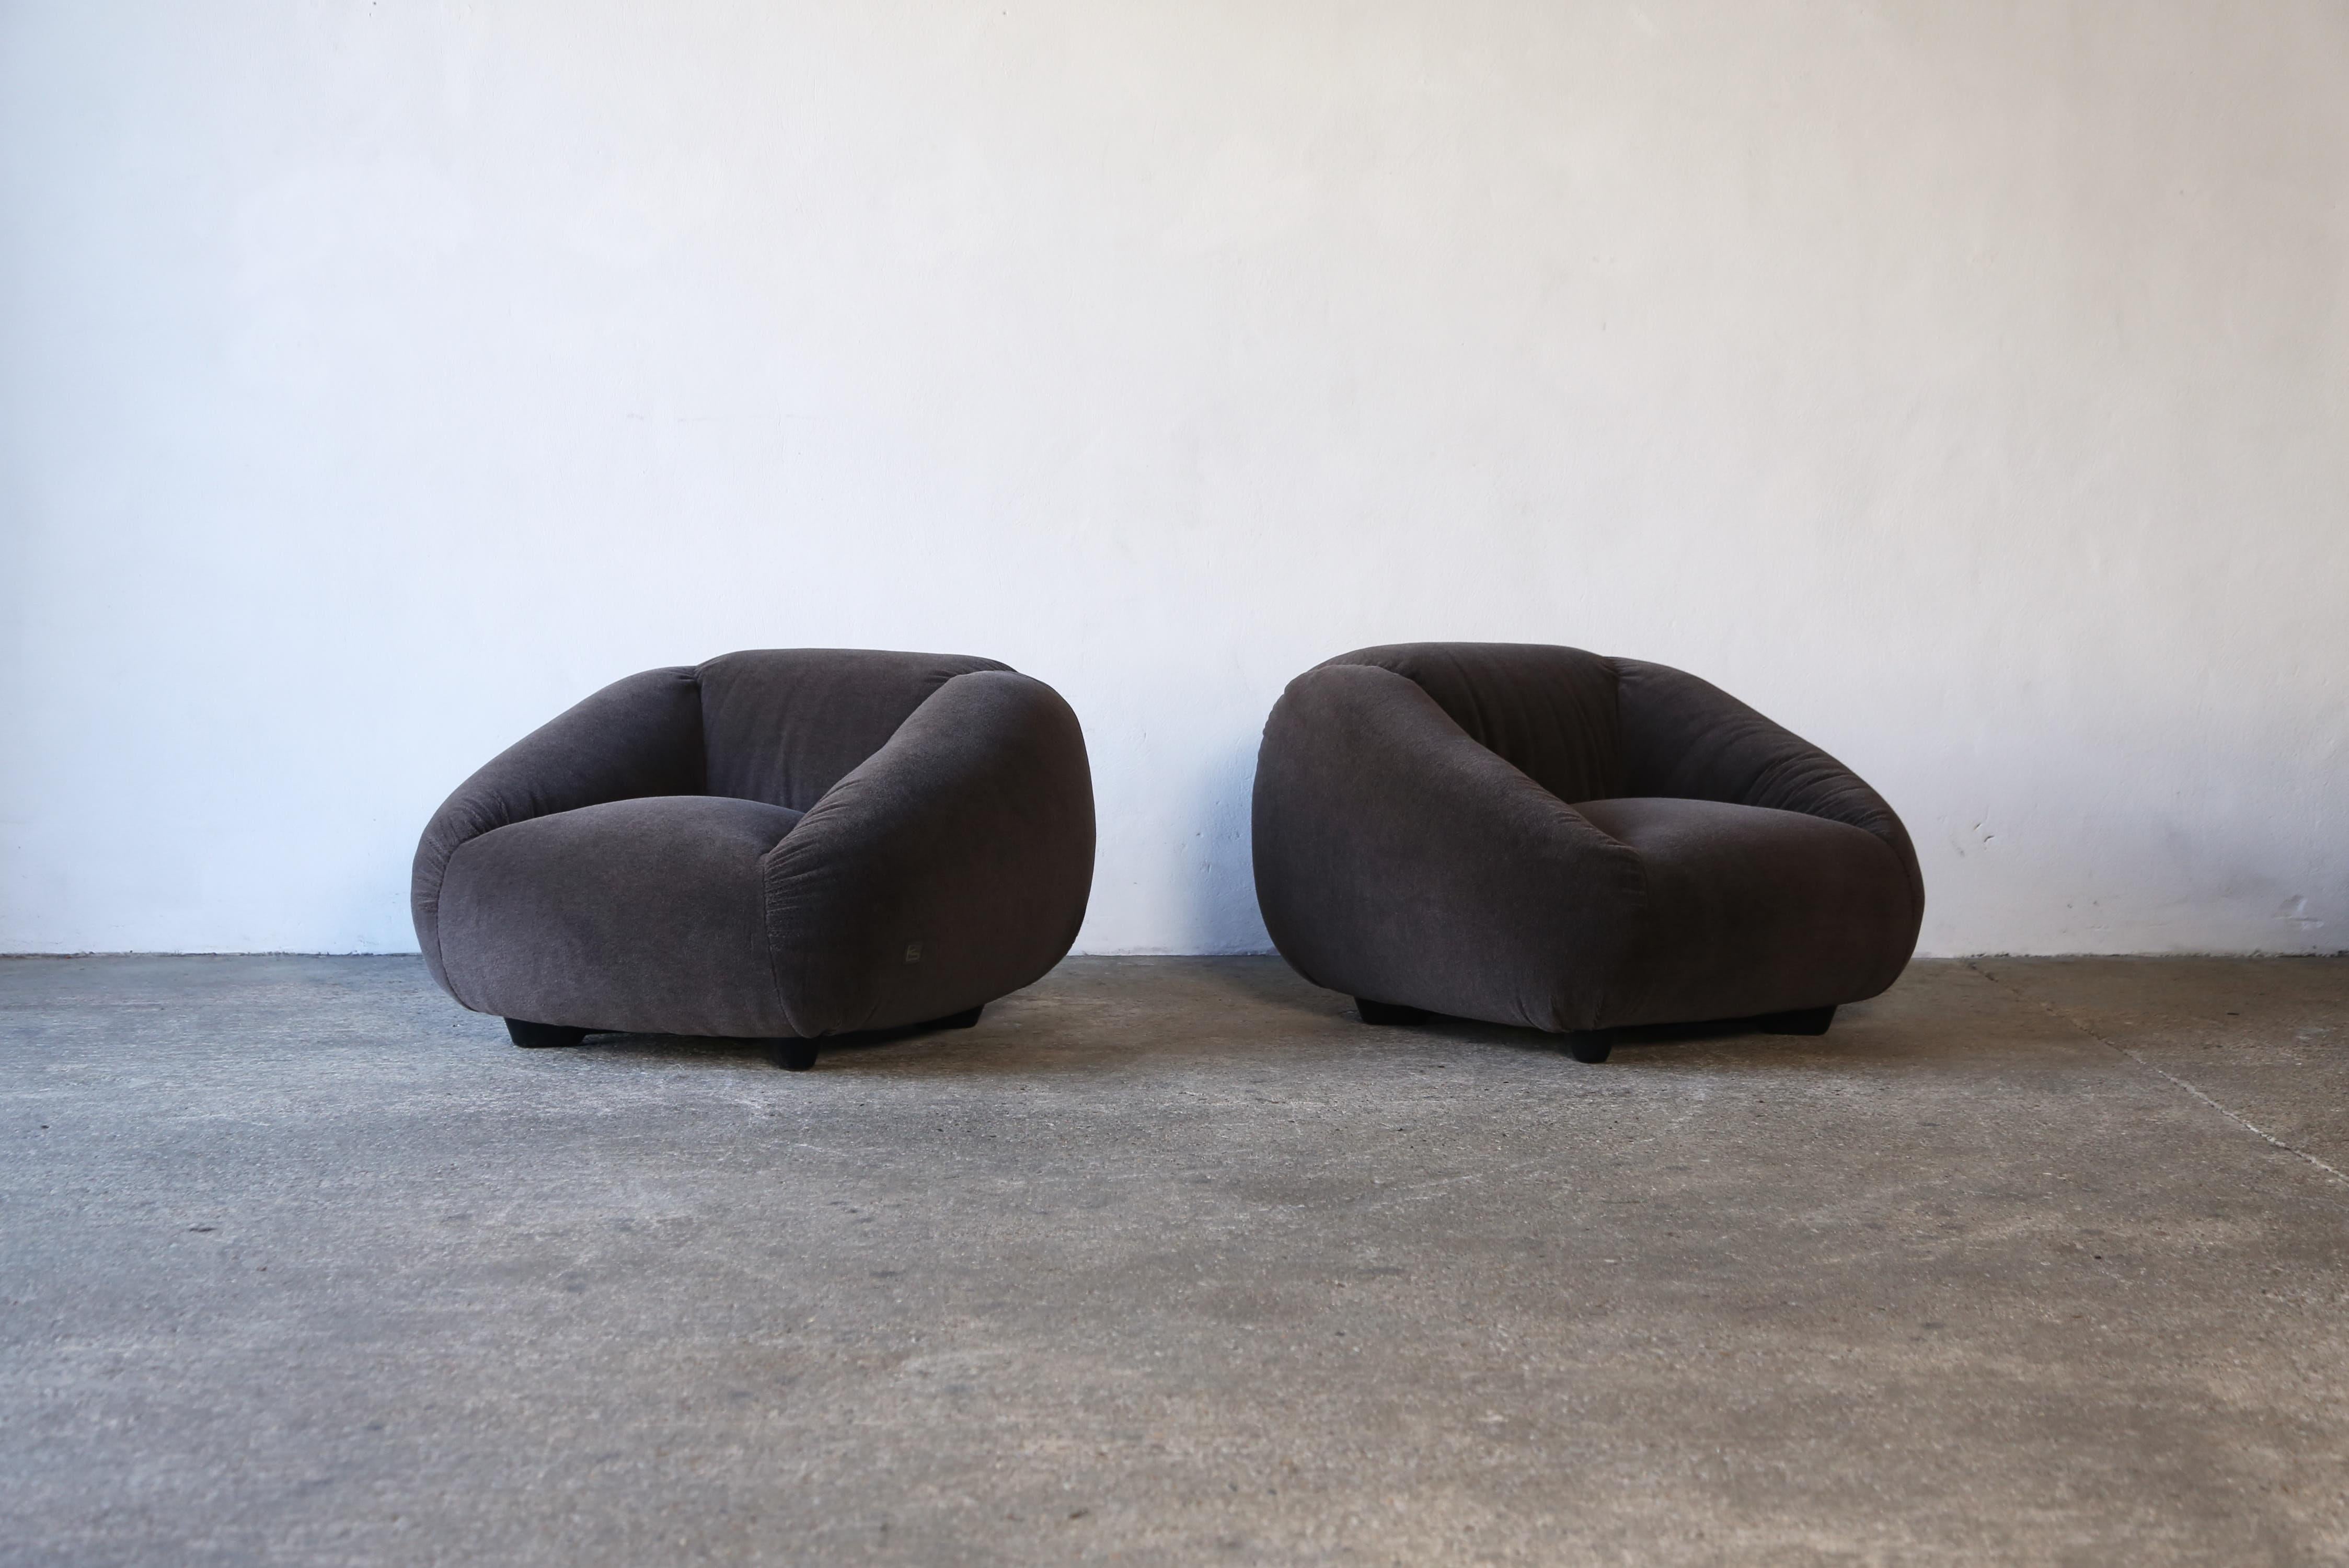 Très rare paire de chaises TEE du Gruppo 14 (Studio 14), années 1970.  Produit par Gruppo Industriale Busnelli S.p.A, Misinto, Milan, Italie.  Label pour une chaise et bases marquées.   Nouvellement revêtu d'un tissu en pure laine d'Alpaga de